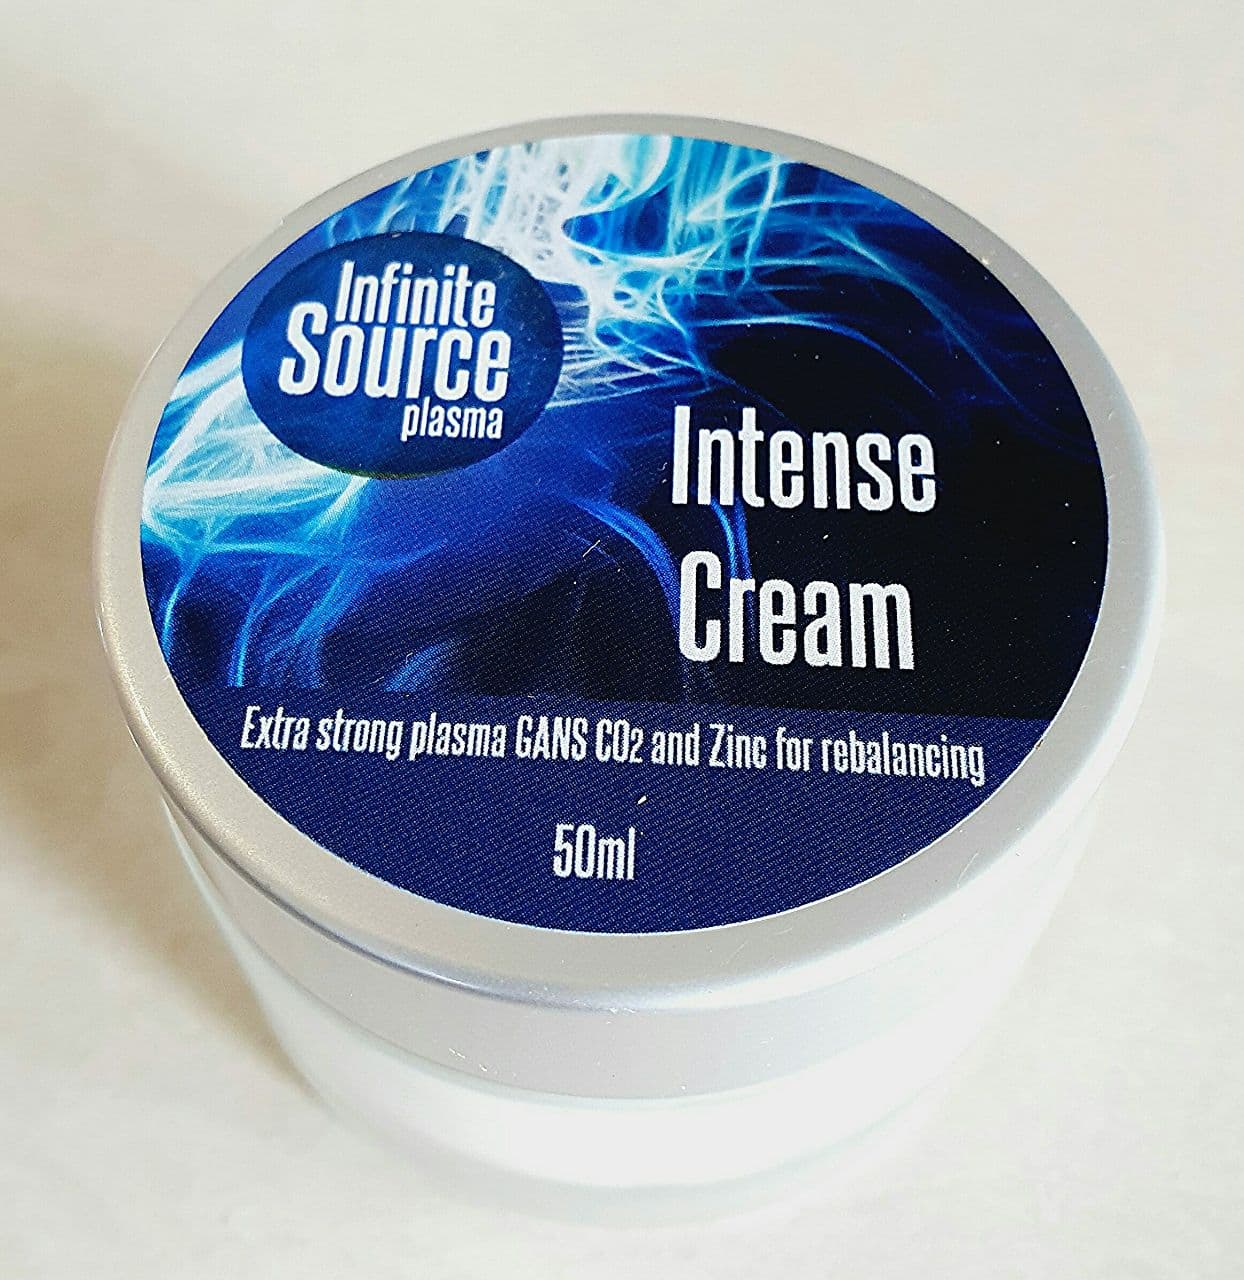 Inner Source – Intense Cream.  50ml